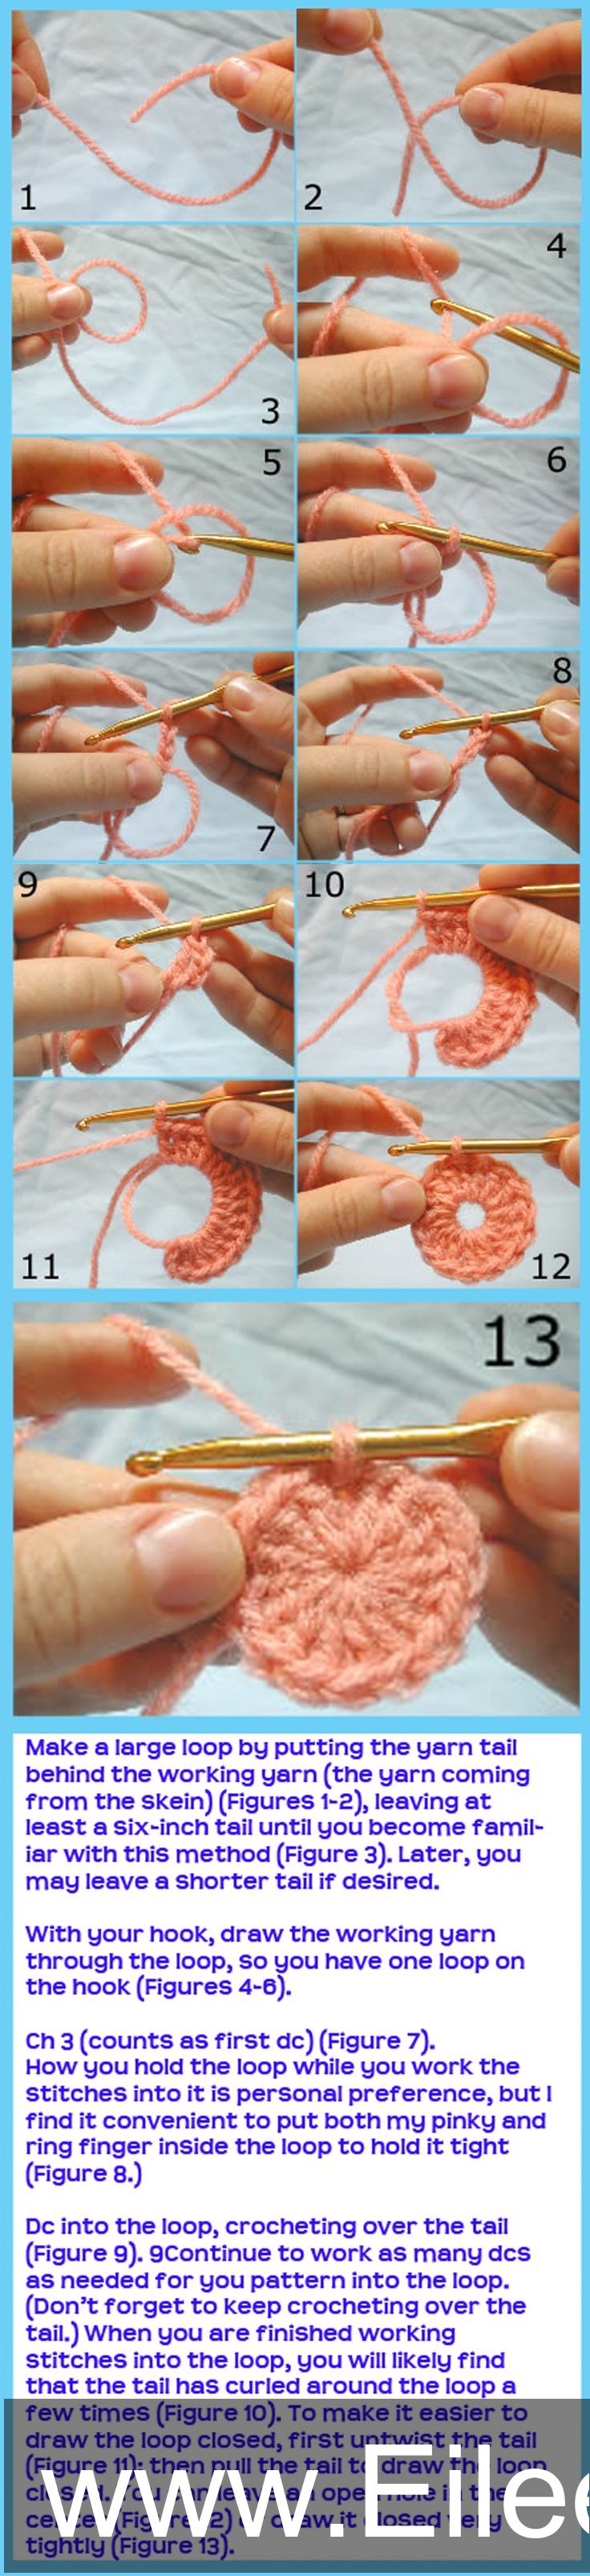 crochet crochettutorial crocheting handmade